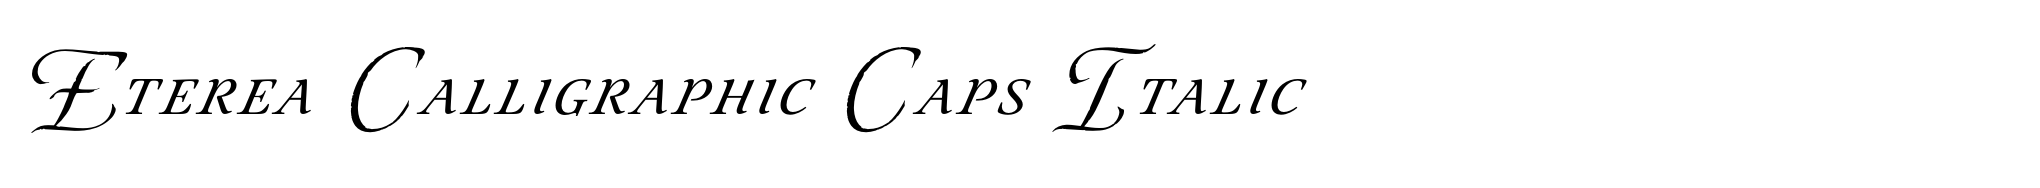 Eterea Calligraphic Caps Italic image